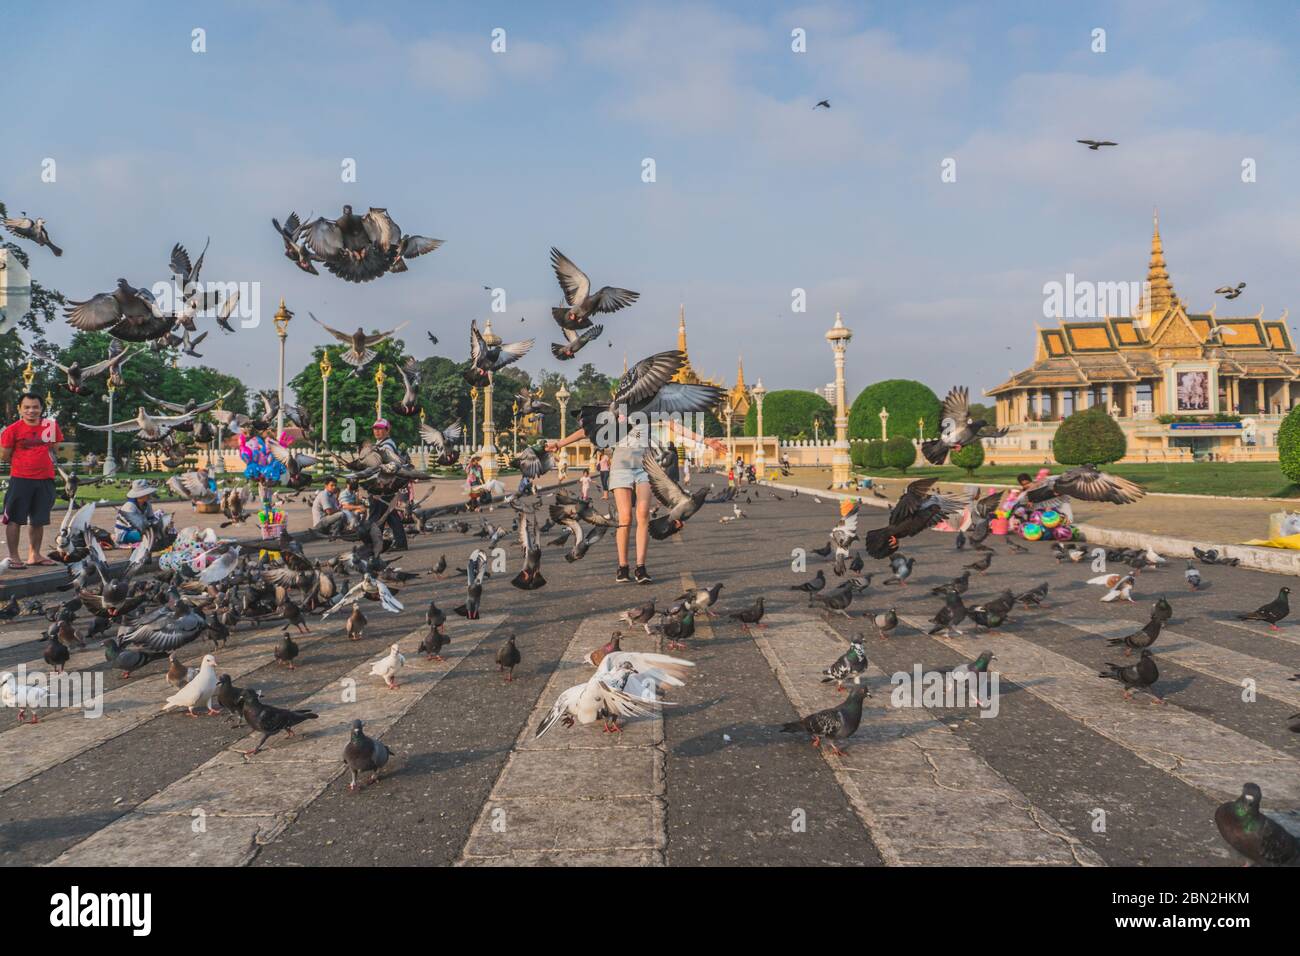 Oiseaux au parc du Palais Royal devant le Palais Royal au quai Sisowath, sur la rivière Tonle SAP, dans la ville de Phnom Penh, au Cambodge. Phnom Penh, Cambodge - 22 FÉVRIER 2020 Banque D'Images